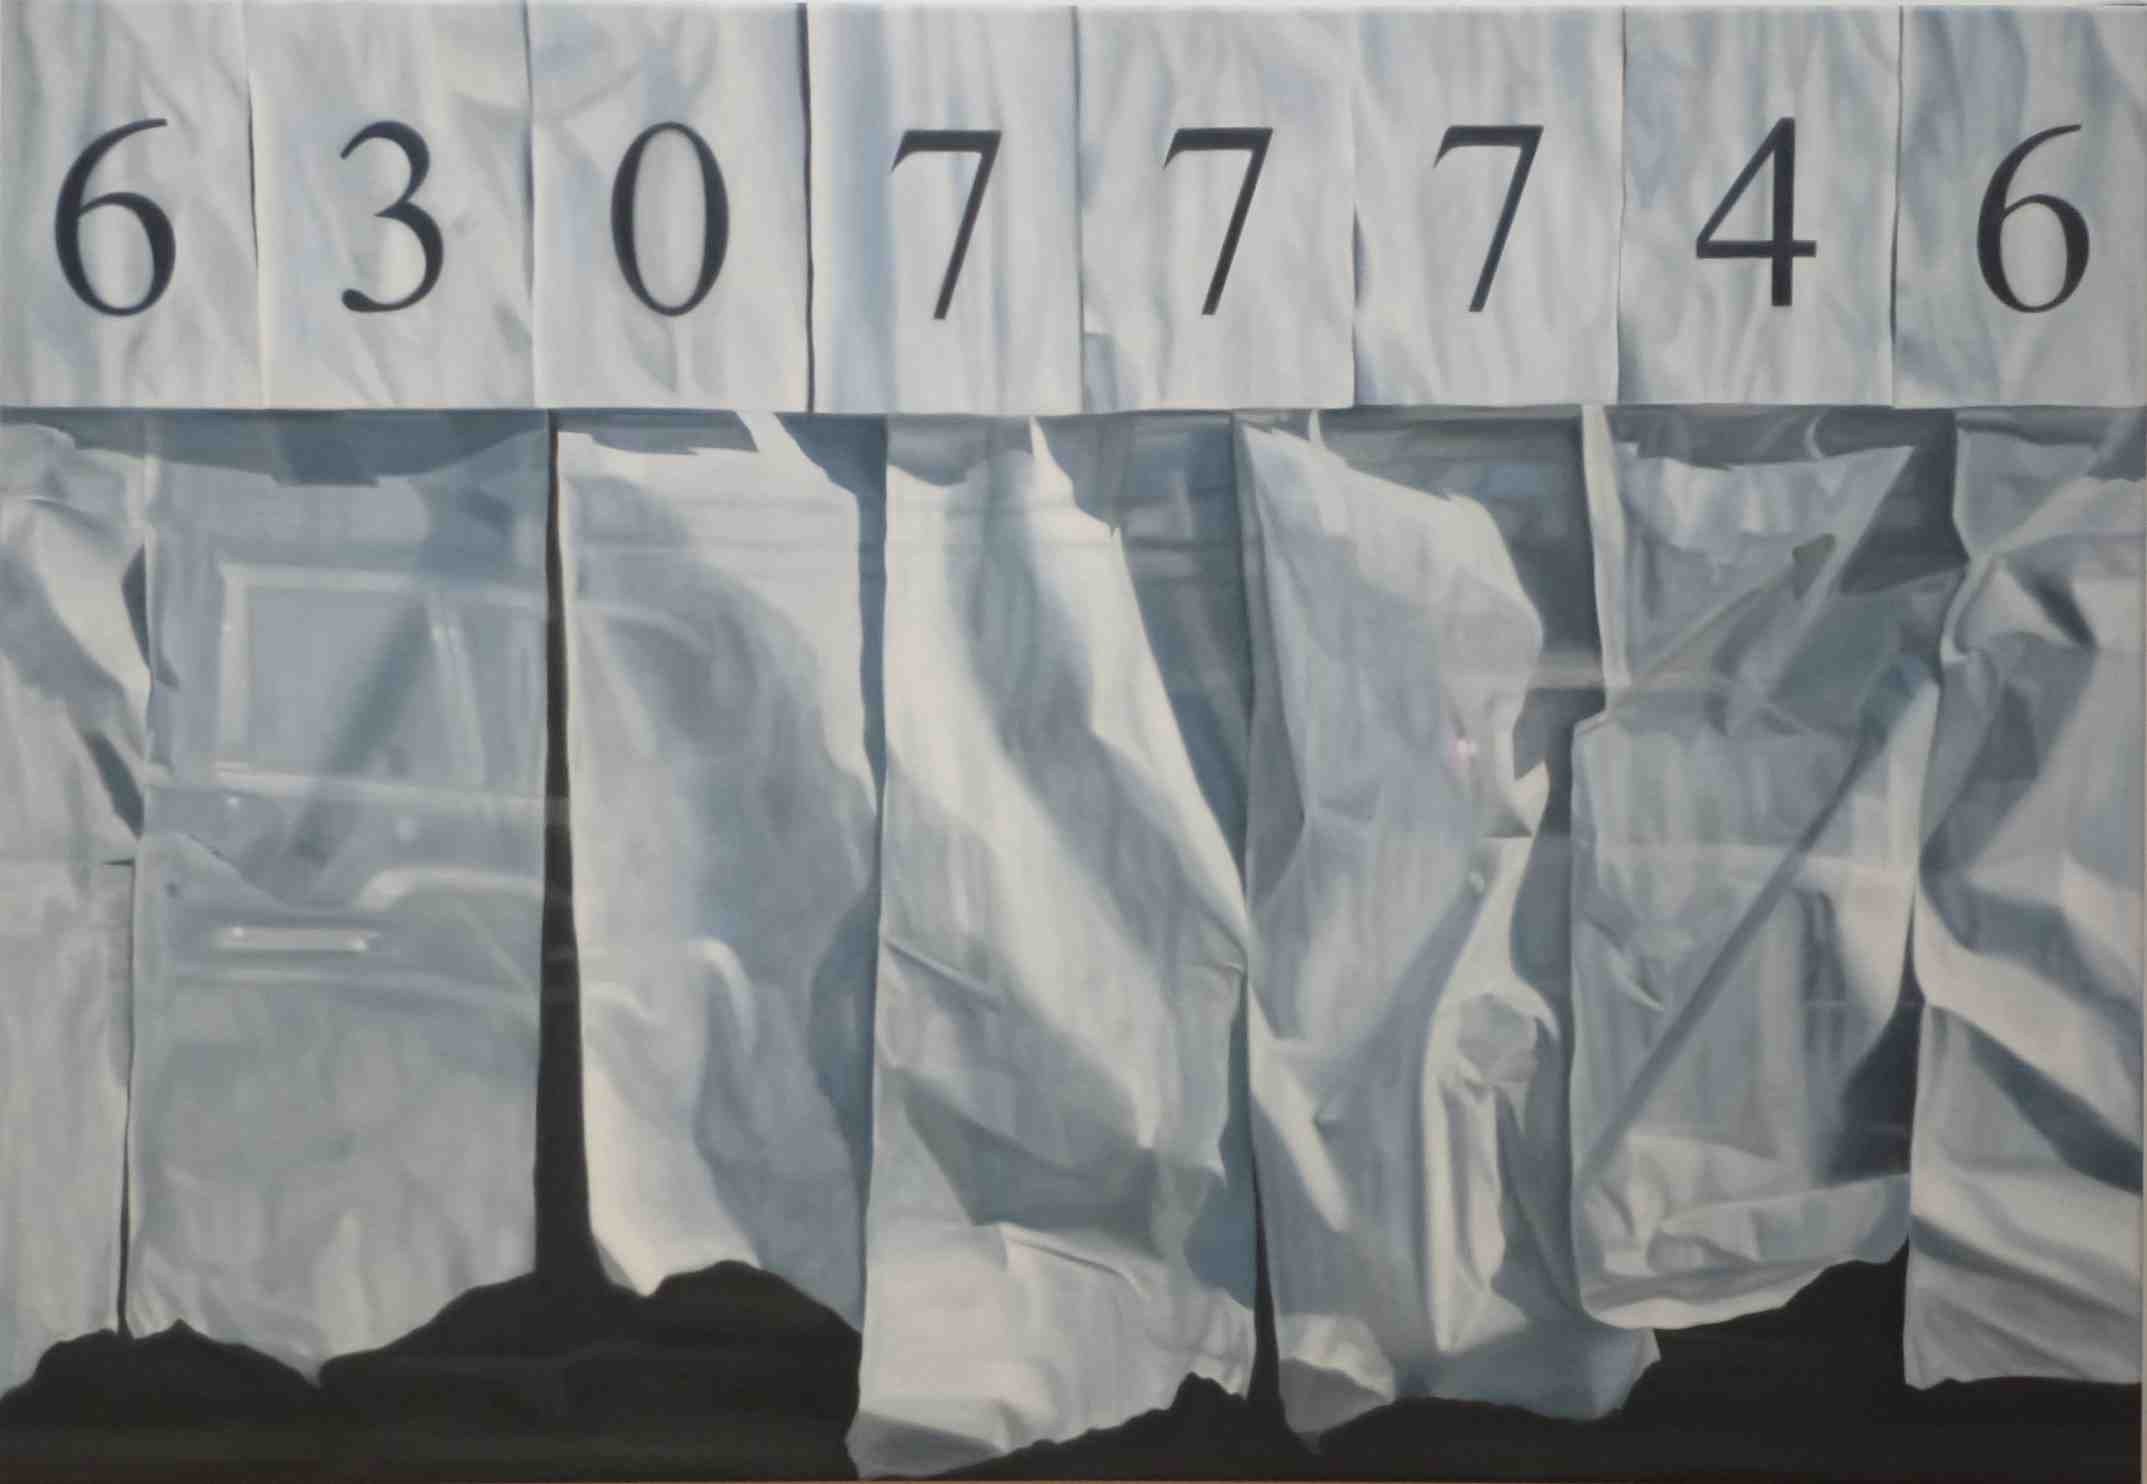 SE ALQUILA, 2013, Öl - Lw, 90 x 130 cm